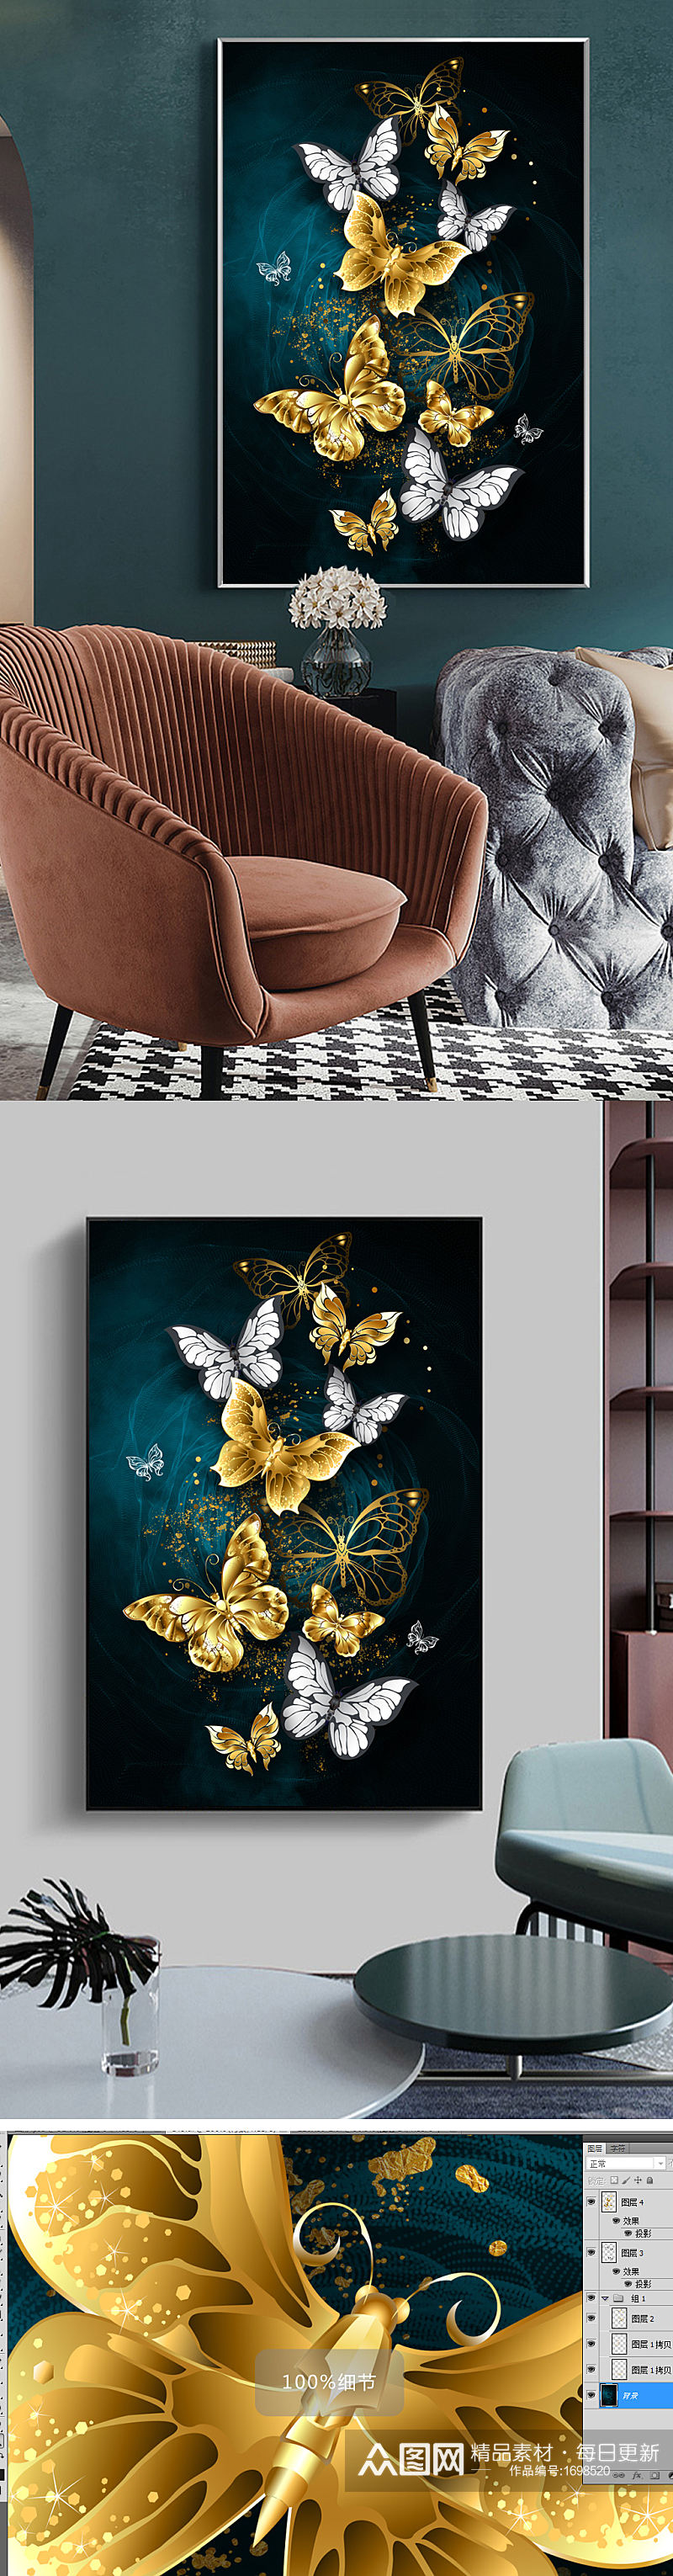 现代轻奢侈简约抽象蝴蝶黑白烁金客厅装饰画素材